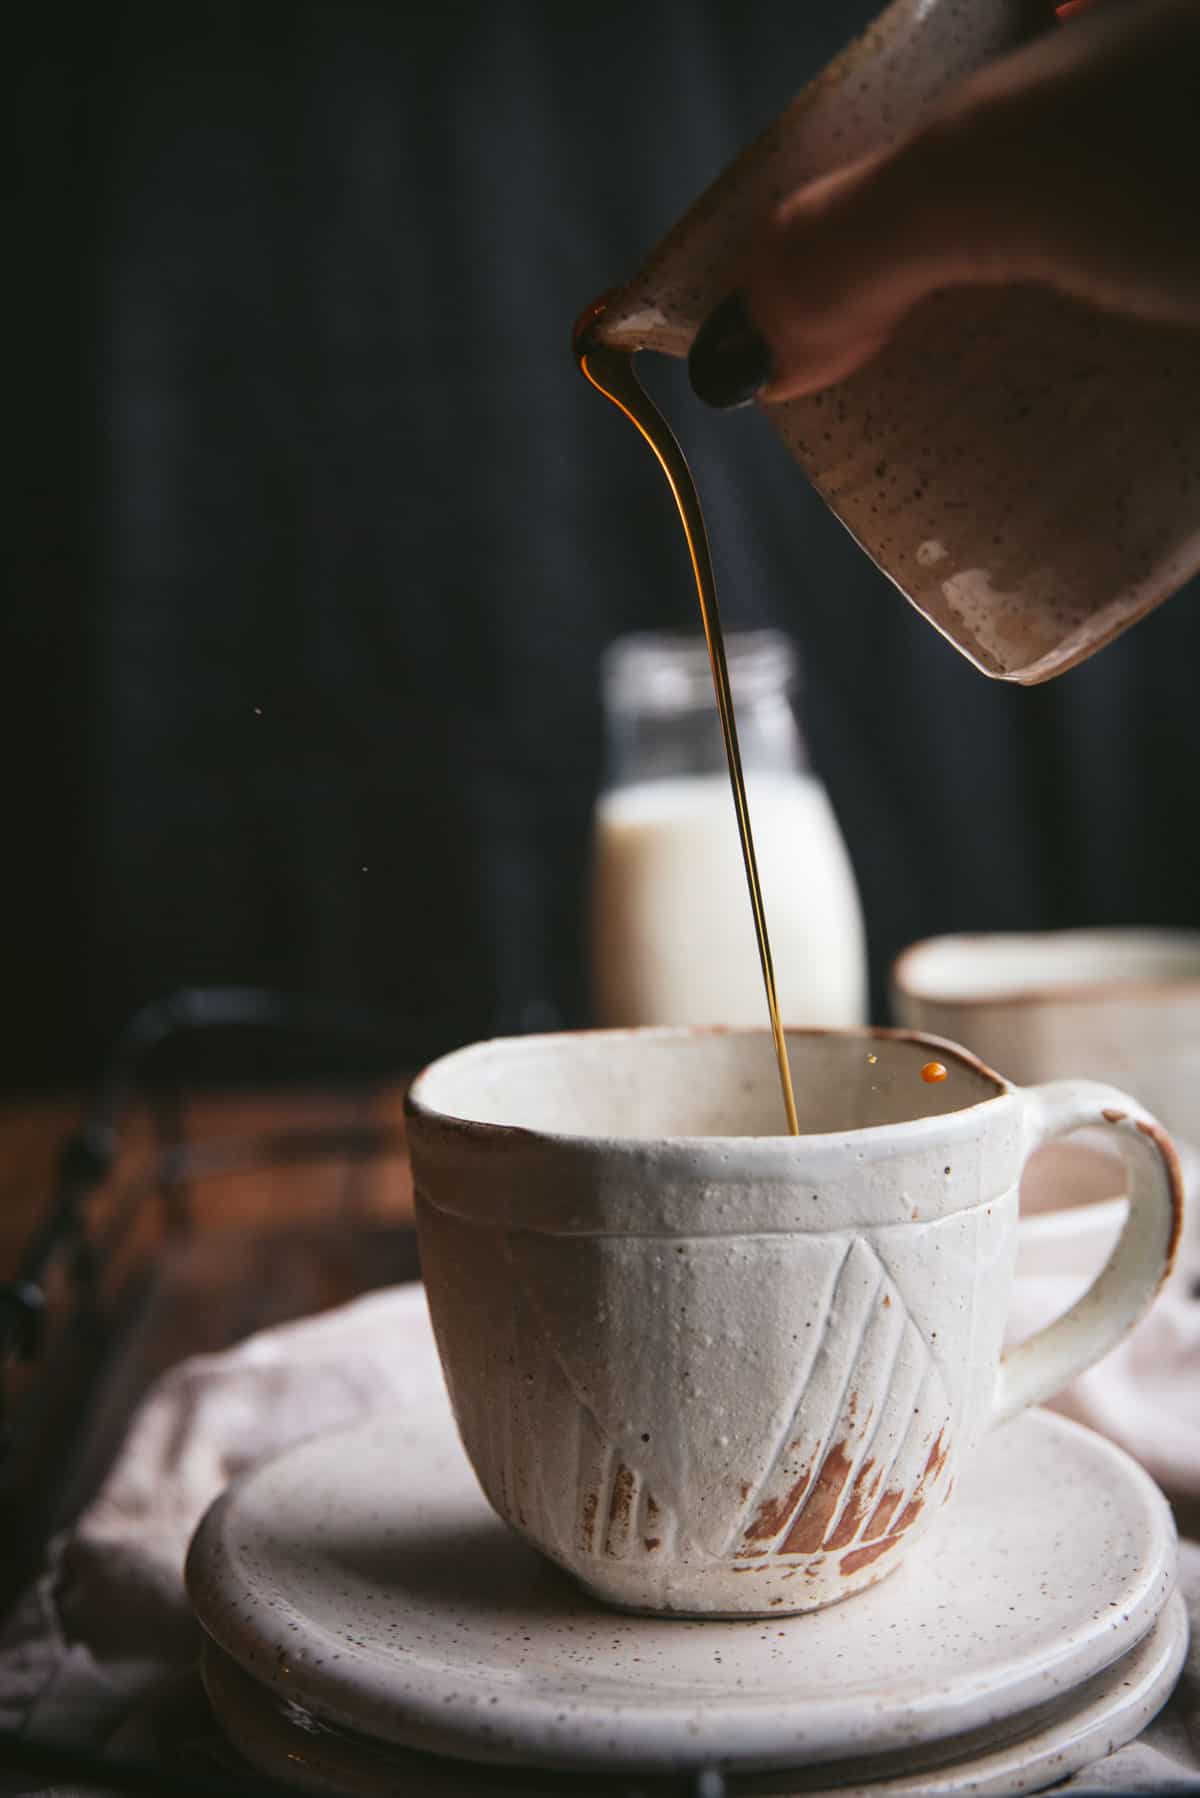 Cermaic carafe pouring maple syrup into a ceramic mug.